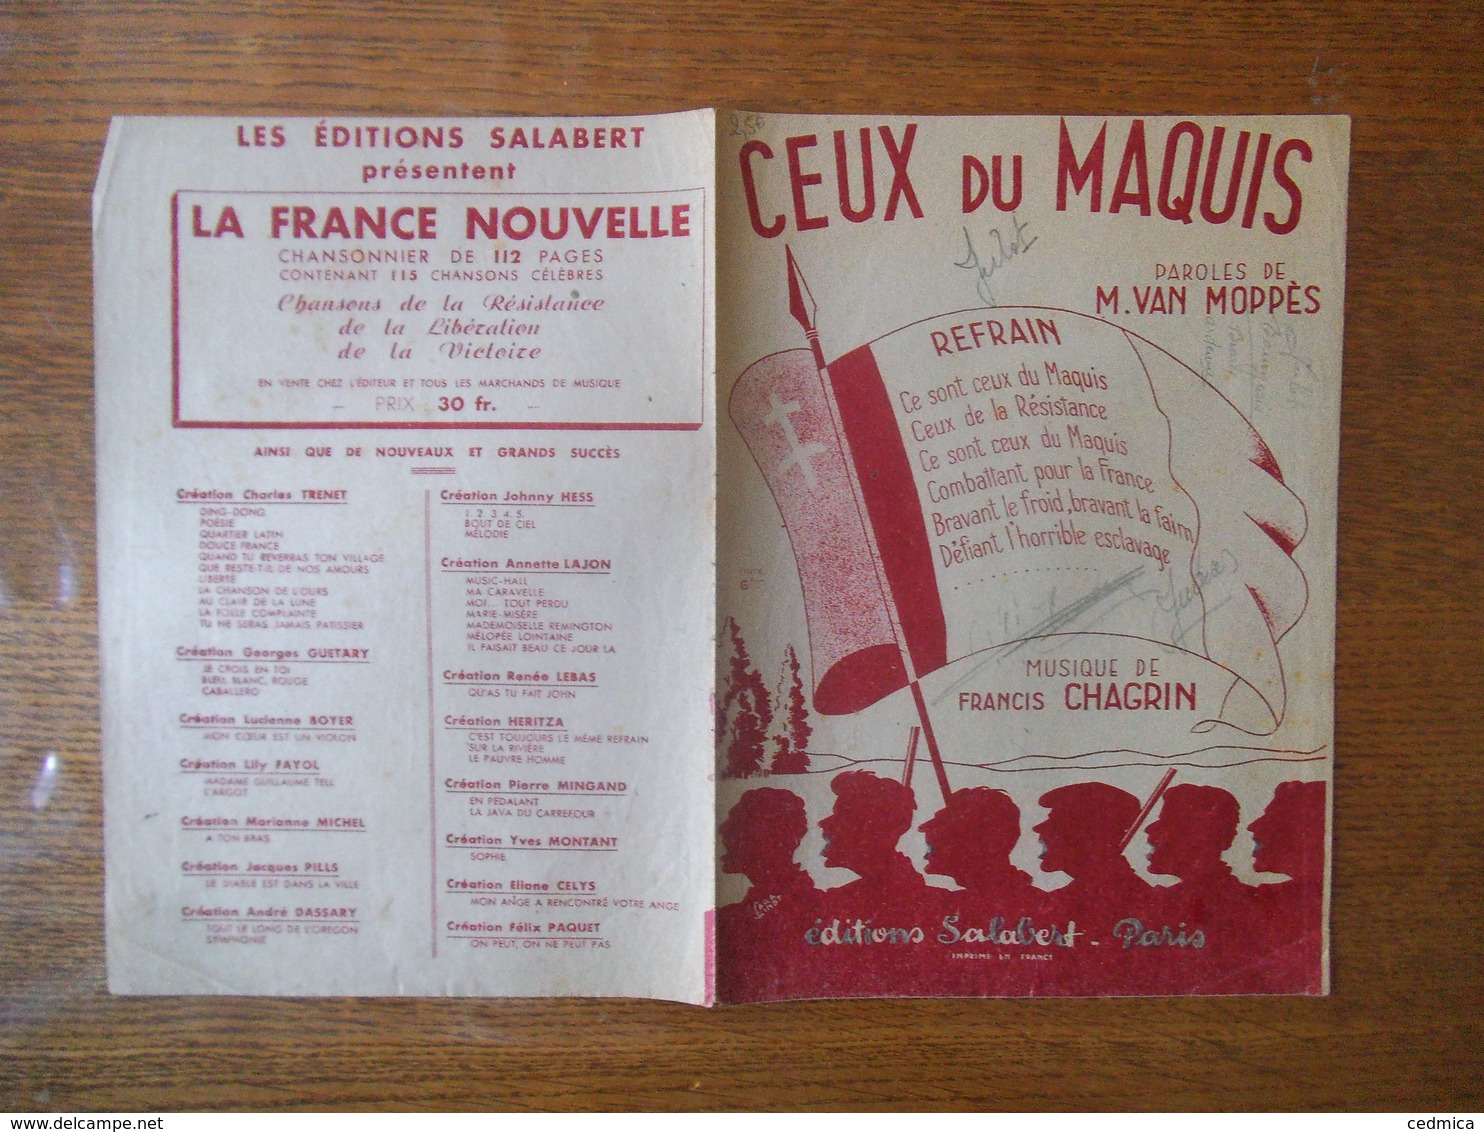 CEUX DU MAQUIS PAROLES DE M. VAN MOPPES MUSIQUE DE FRANCIS CHAGRIN MCMXLIV - Partituren